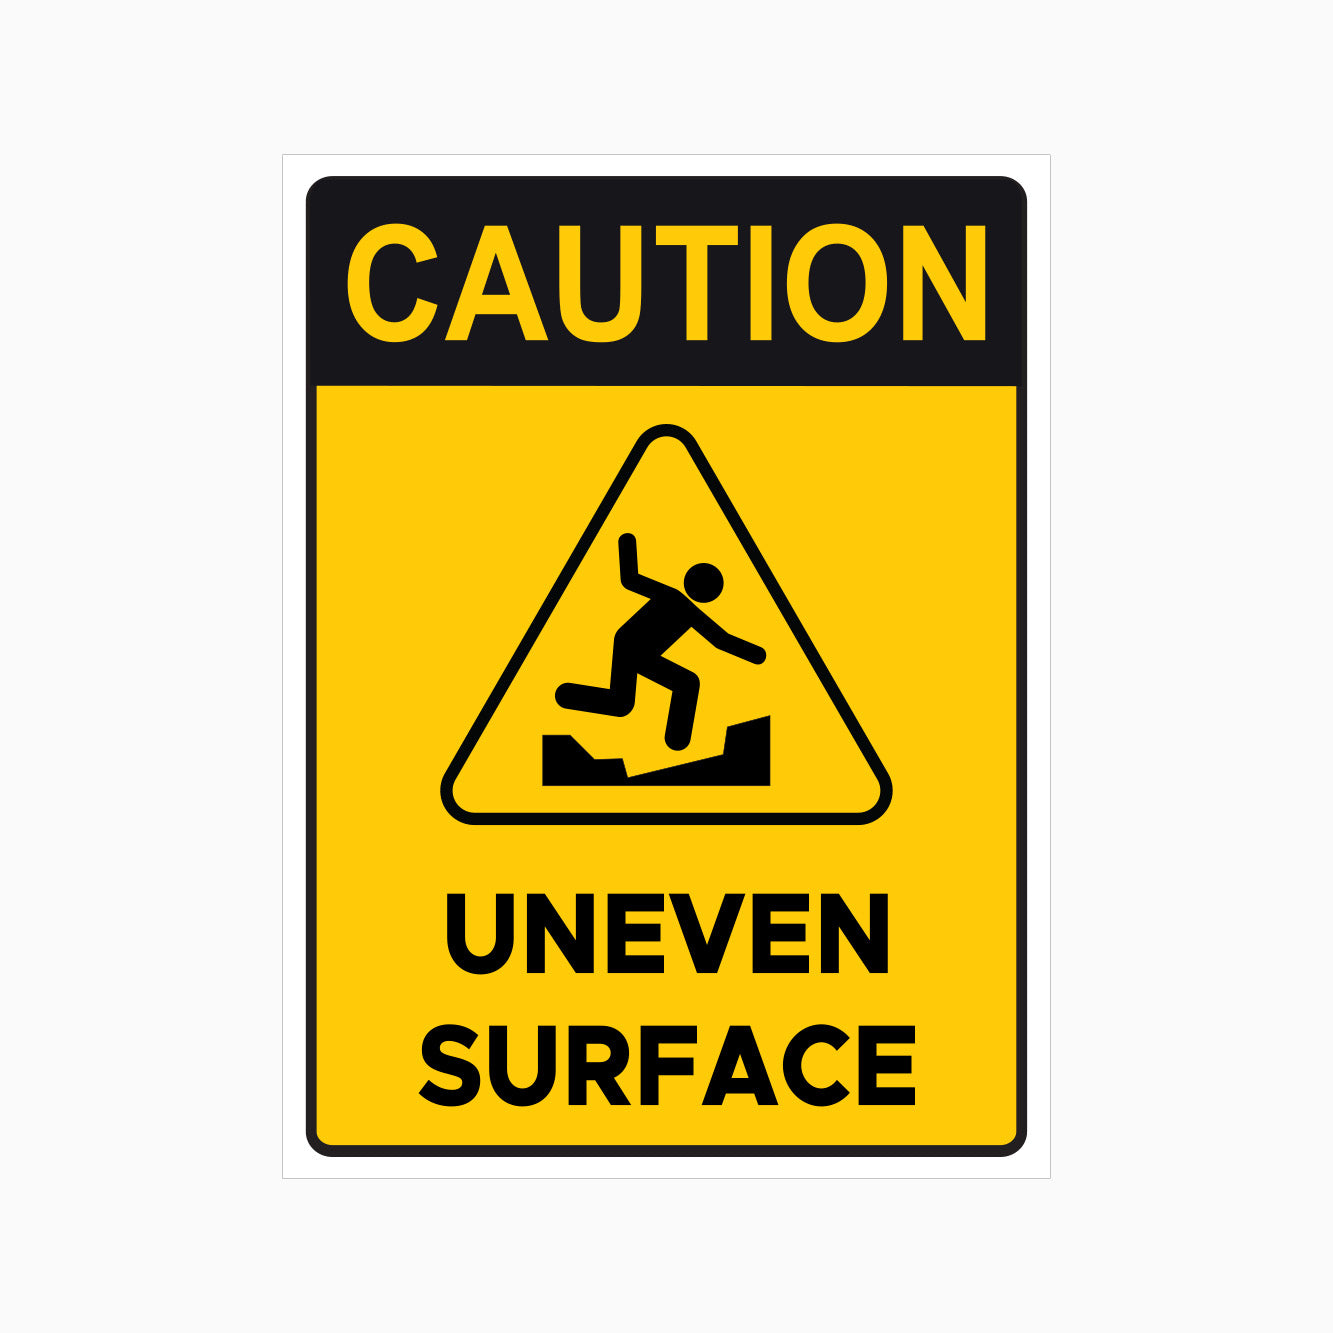 CAUTION - UNEVEN SURFACE SIGN